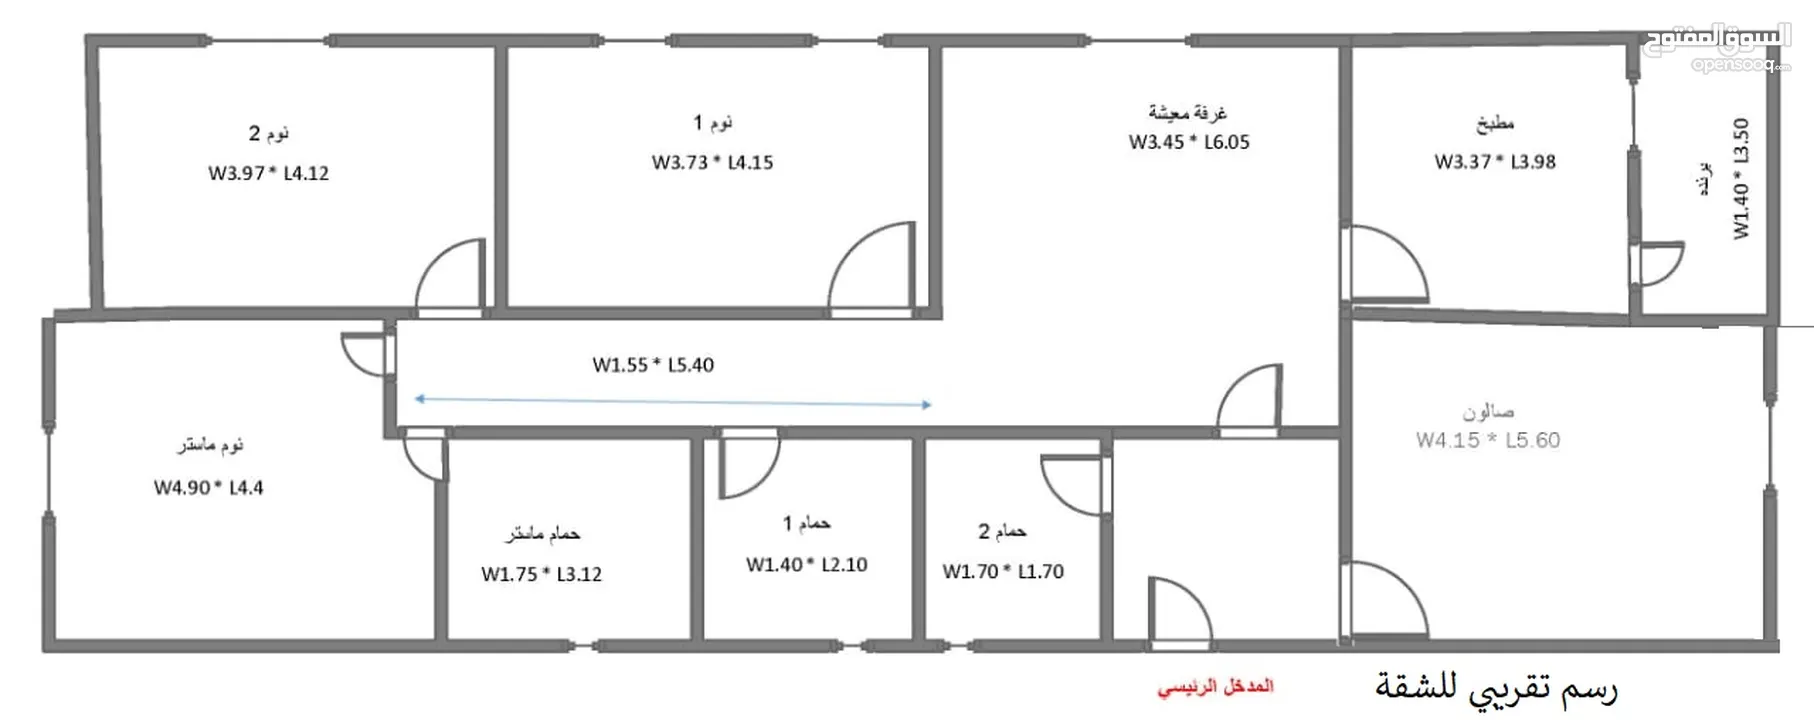 شقة للبيع ضاحية الرشيد الجبيهة شارع سليمان المصري 155 متر